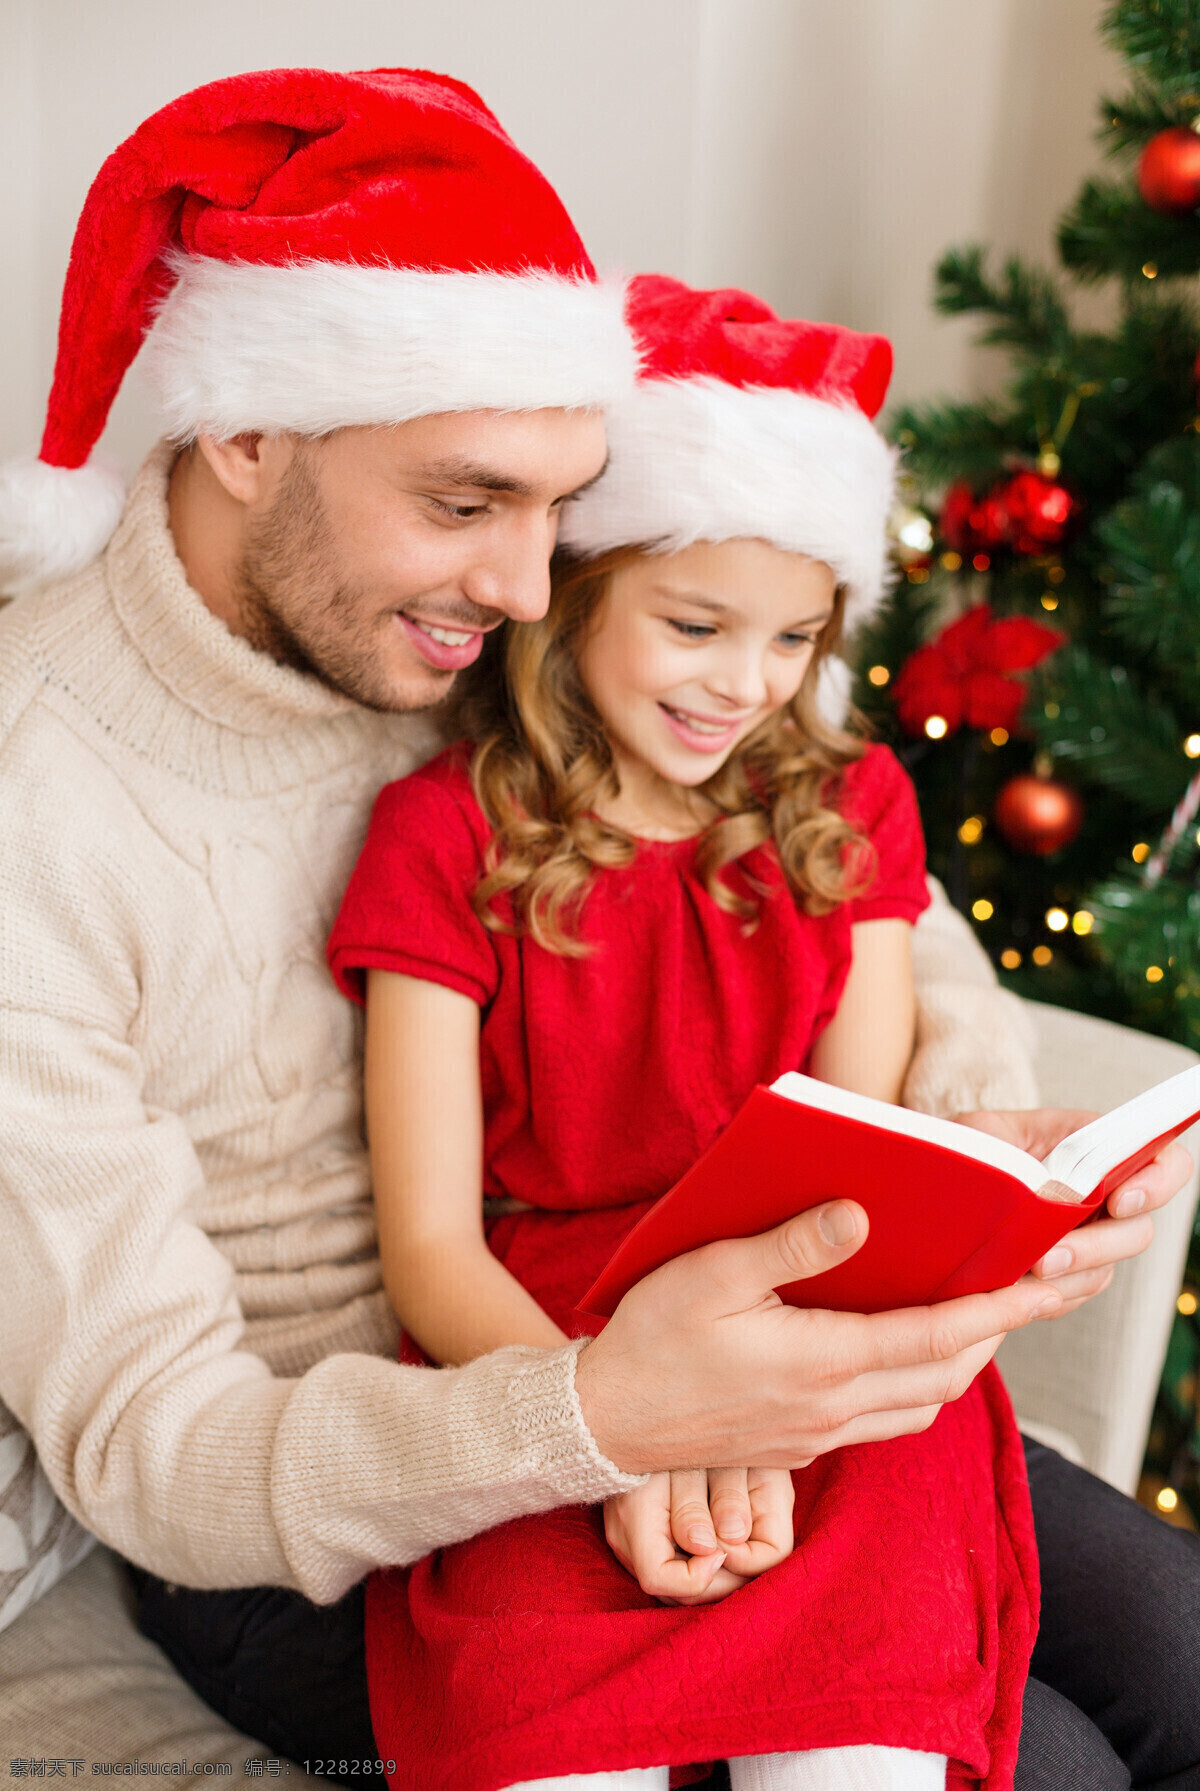 陪 女儿 看书 爸爸 陪女儿看书 微笑 圣诞帽子 父女 圣诞节 节日 生活人物 人物图片